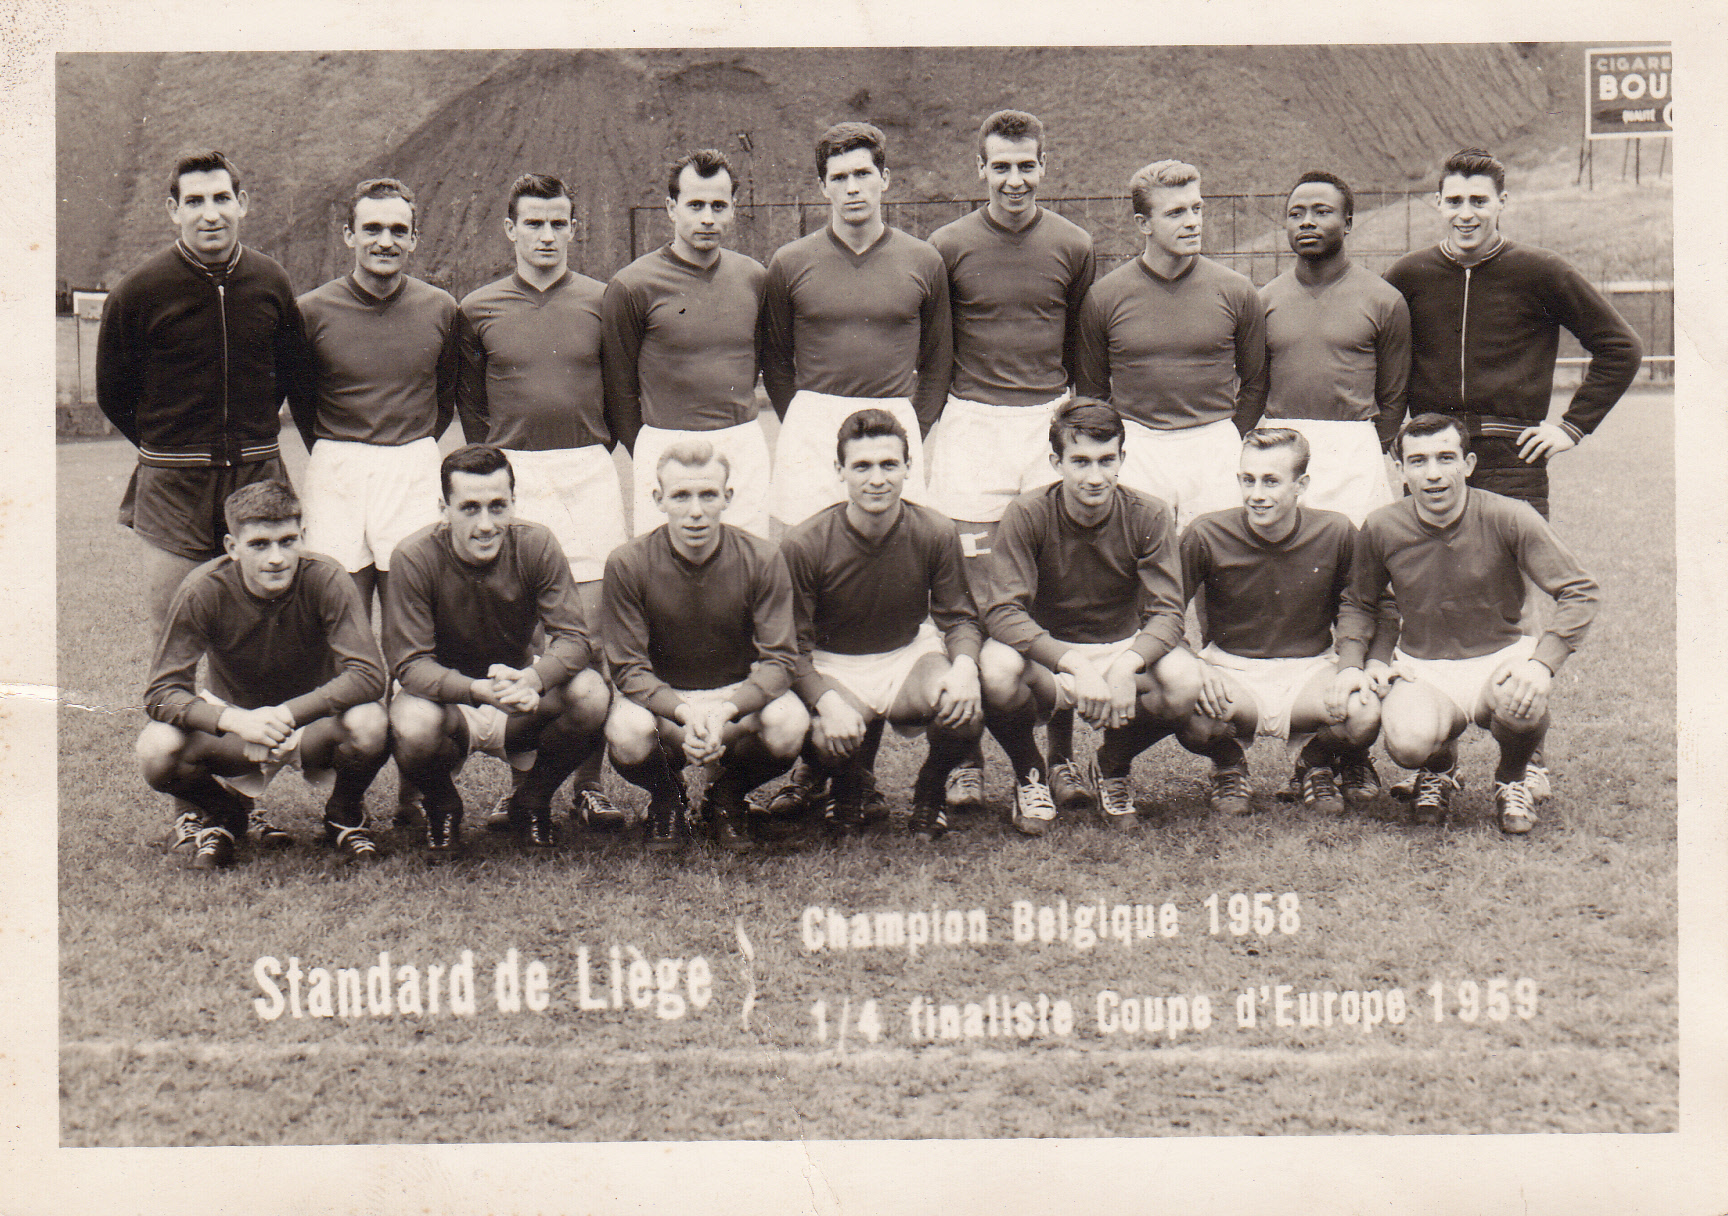 Champion de Belgique 1958